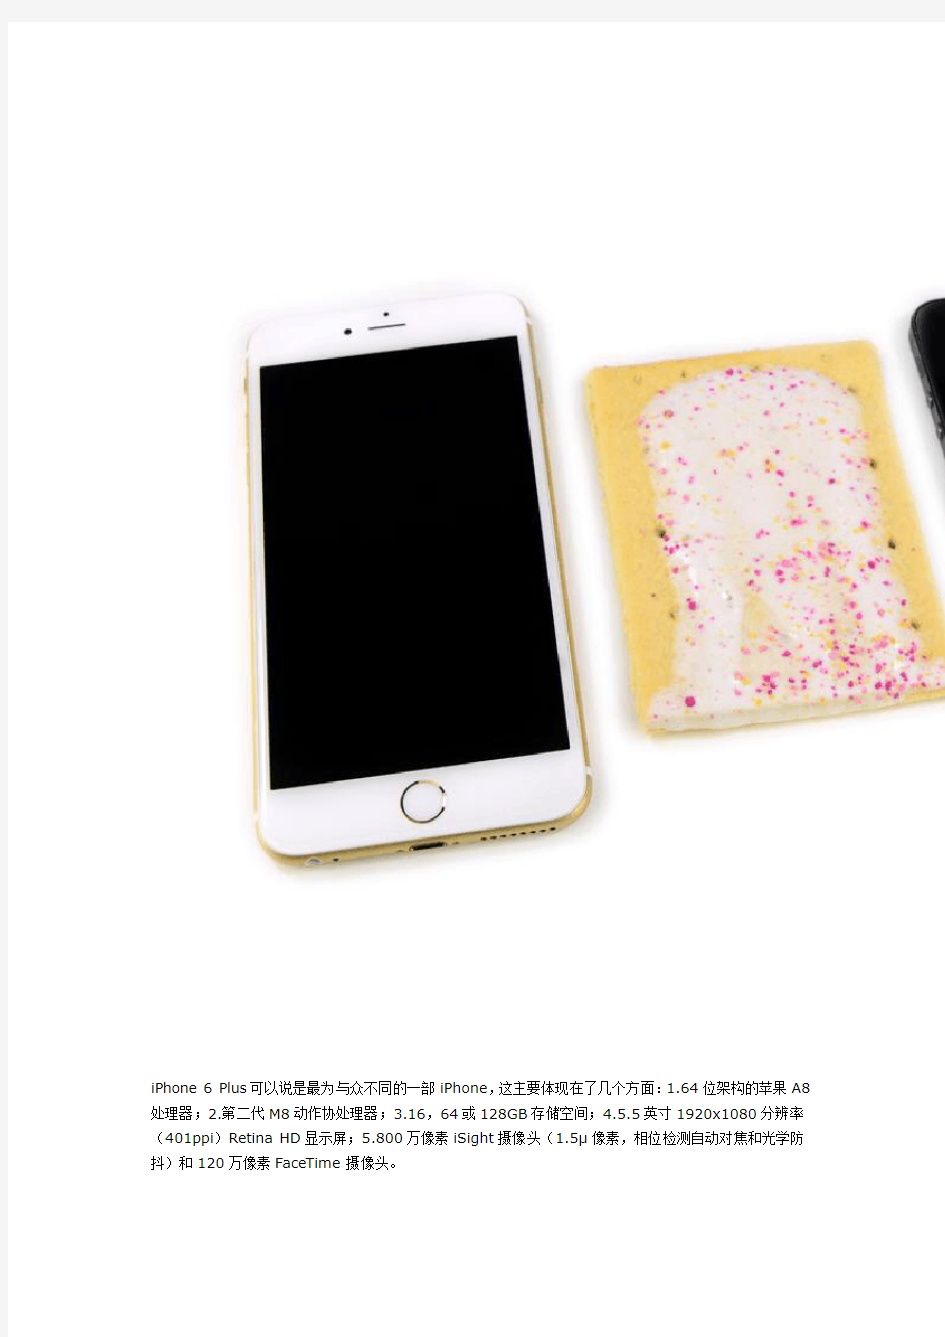 iPhone 6 Plus手机配件拆解报告图文详解